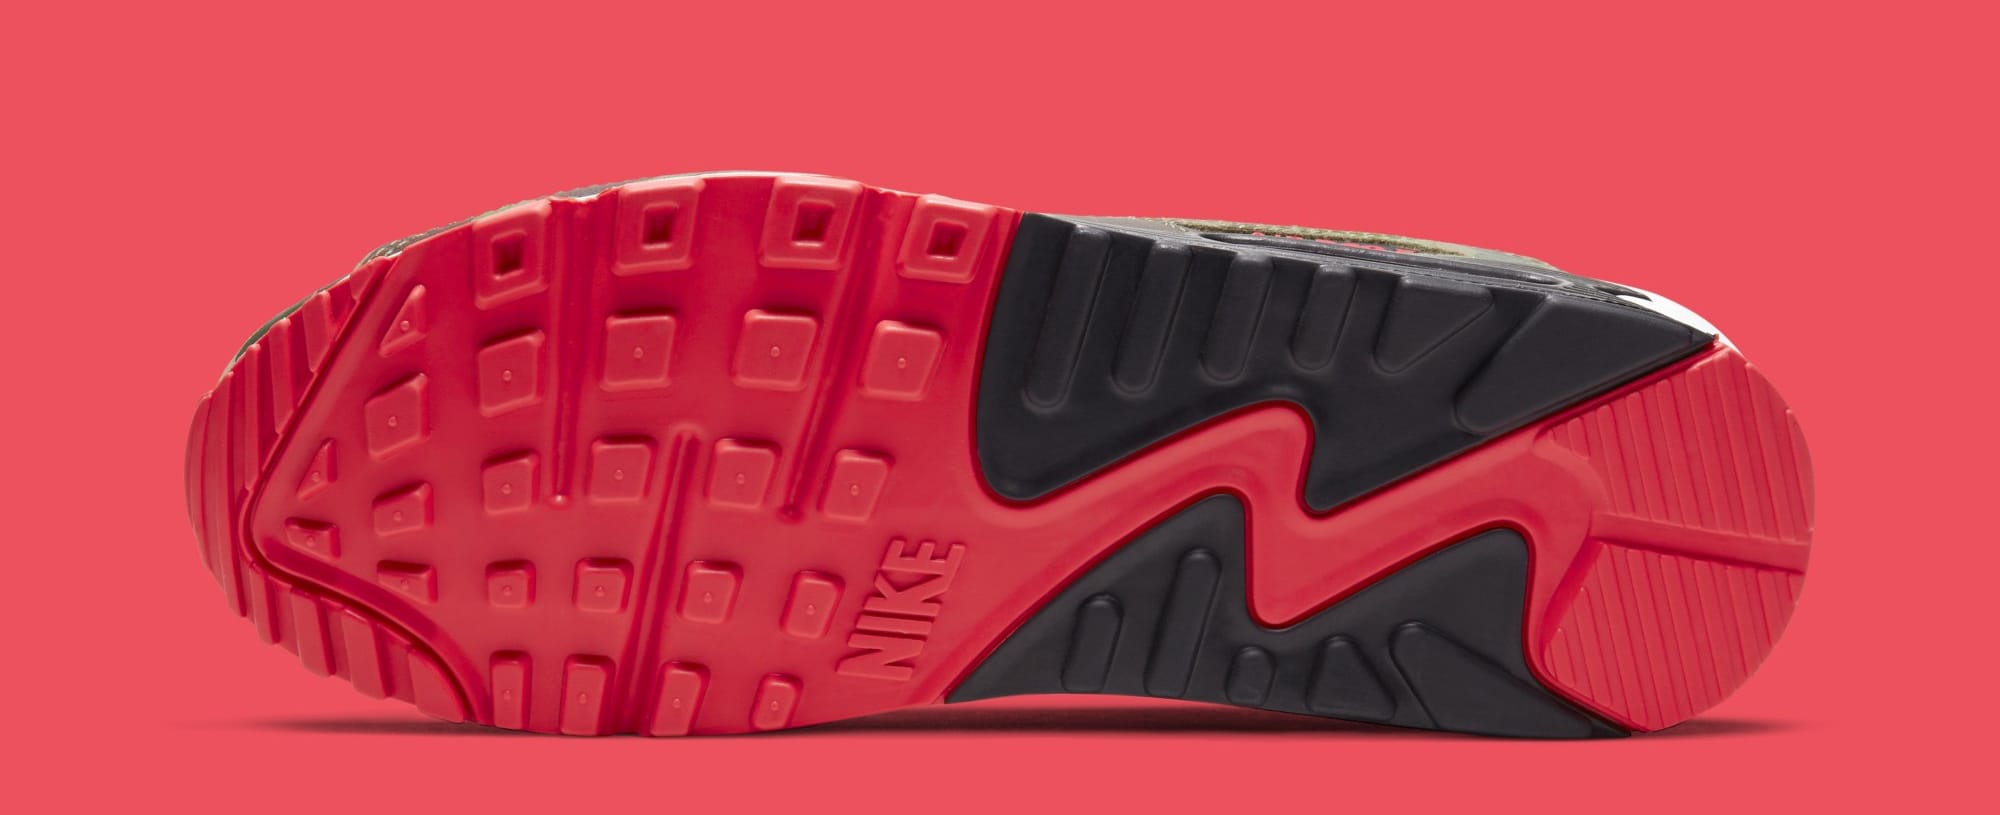 Nike Air Max 90 &#x27;Infrared Duck Camo&#x27; CW6024-600 (Sole)